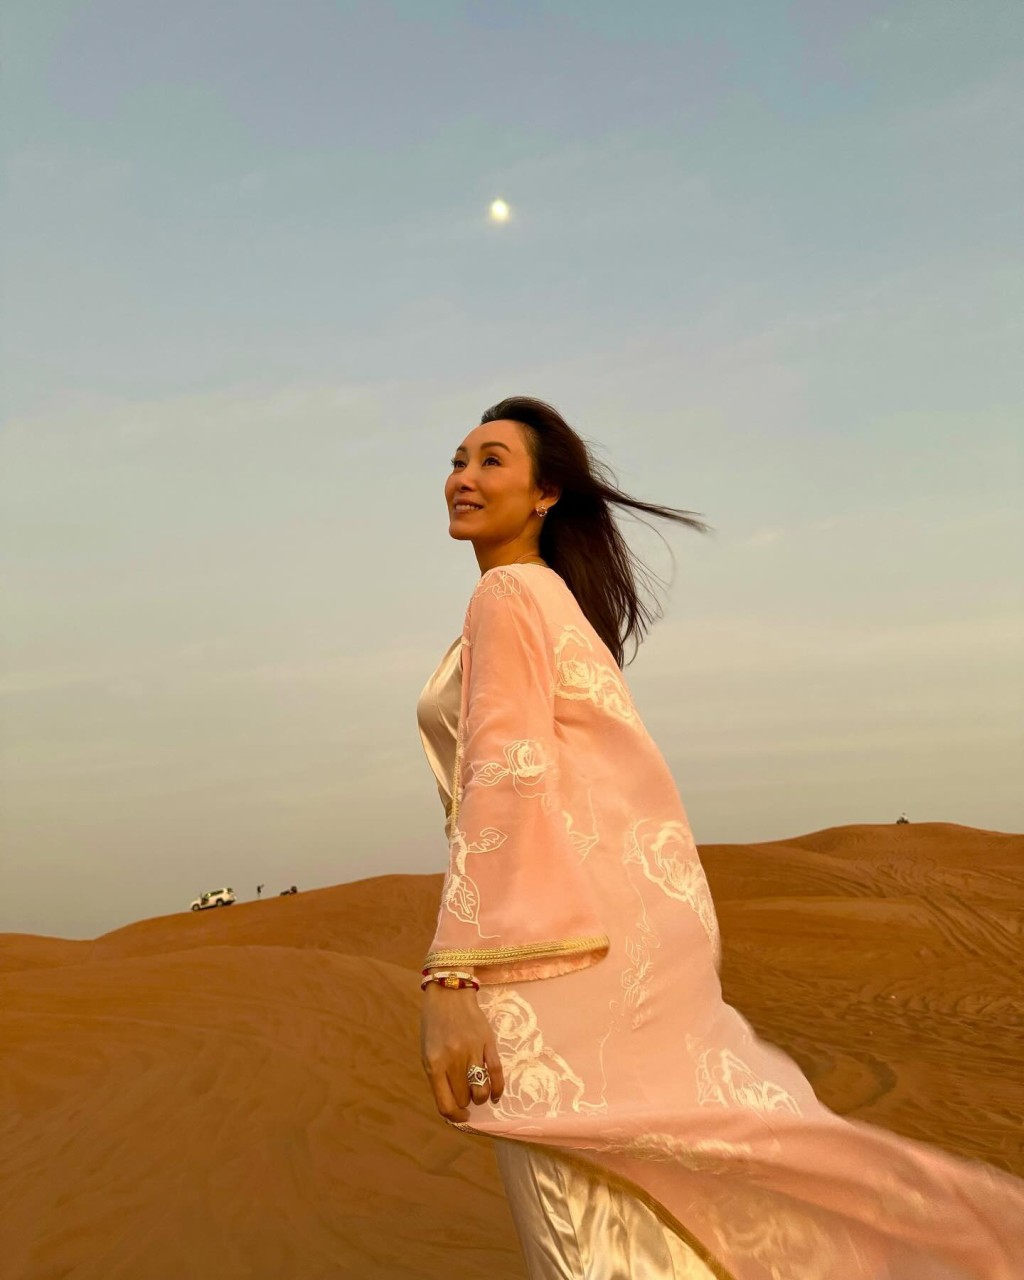 郭可盈在沙漠拍摄单人照。